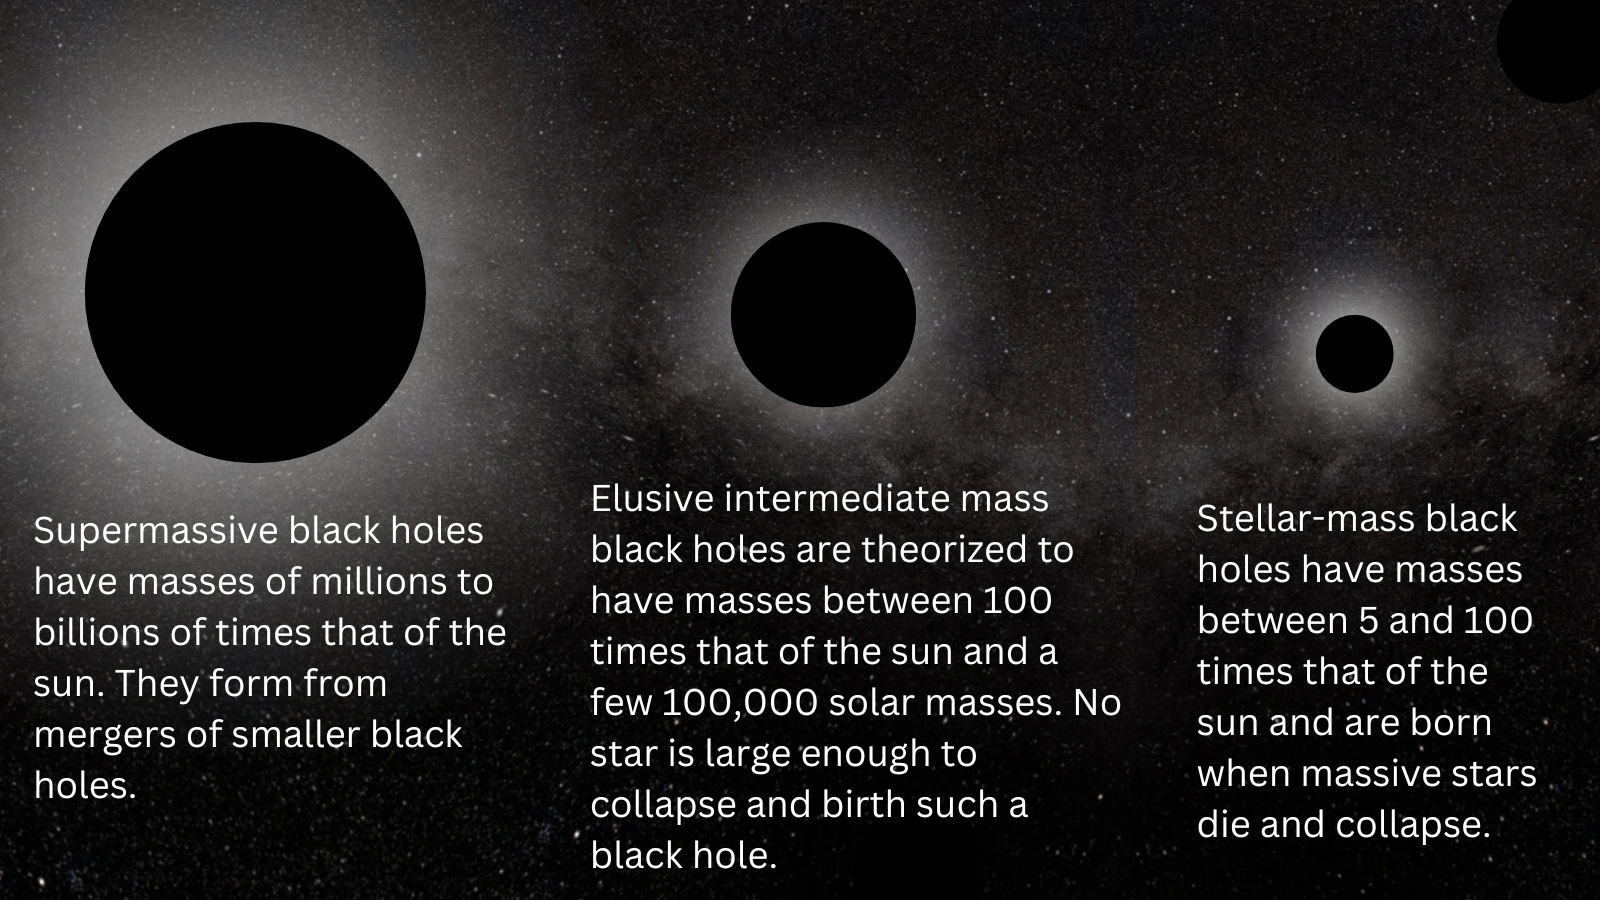 Drei schwarze Kreise, deren Größe von links nach rechts abnimmt, und der Text unter den Kreisen erklärt die unterschiedlichen Massen verschiedener Klassen von Schwarzen Löchern.